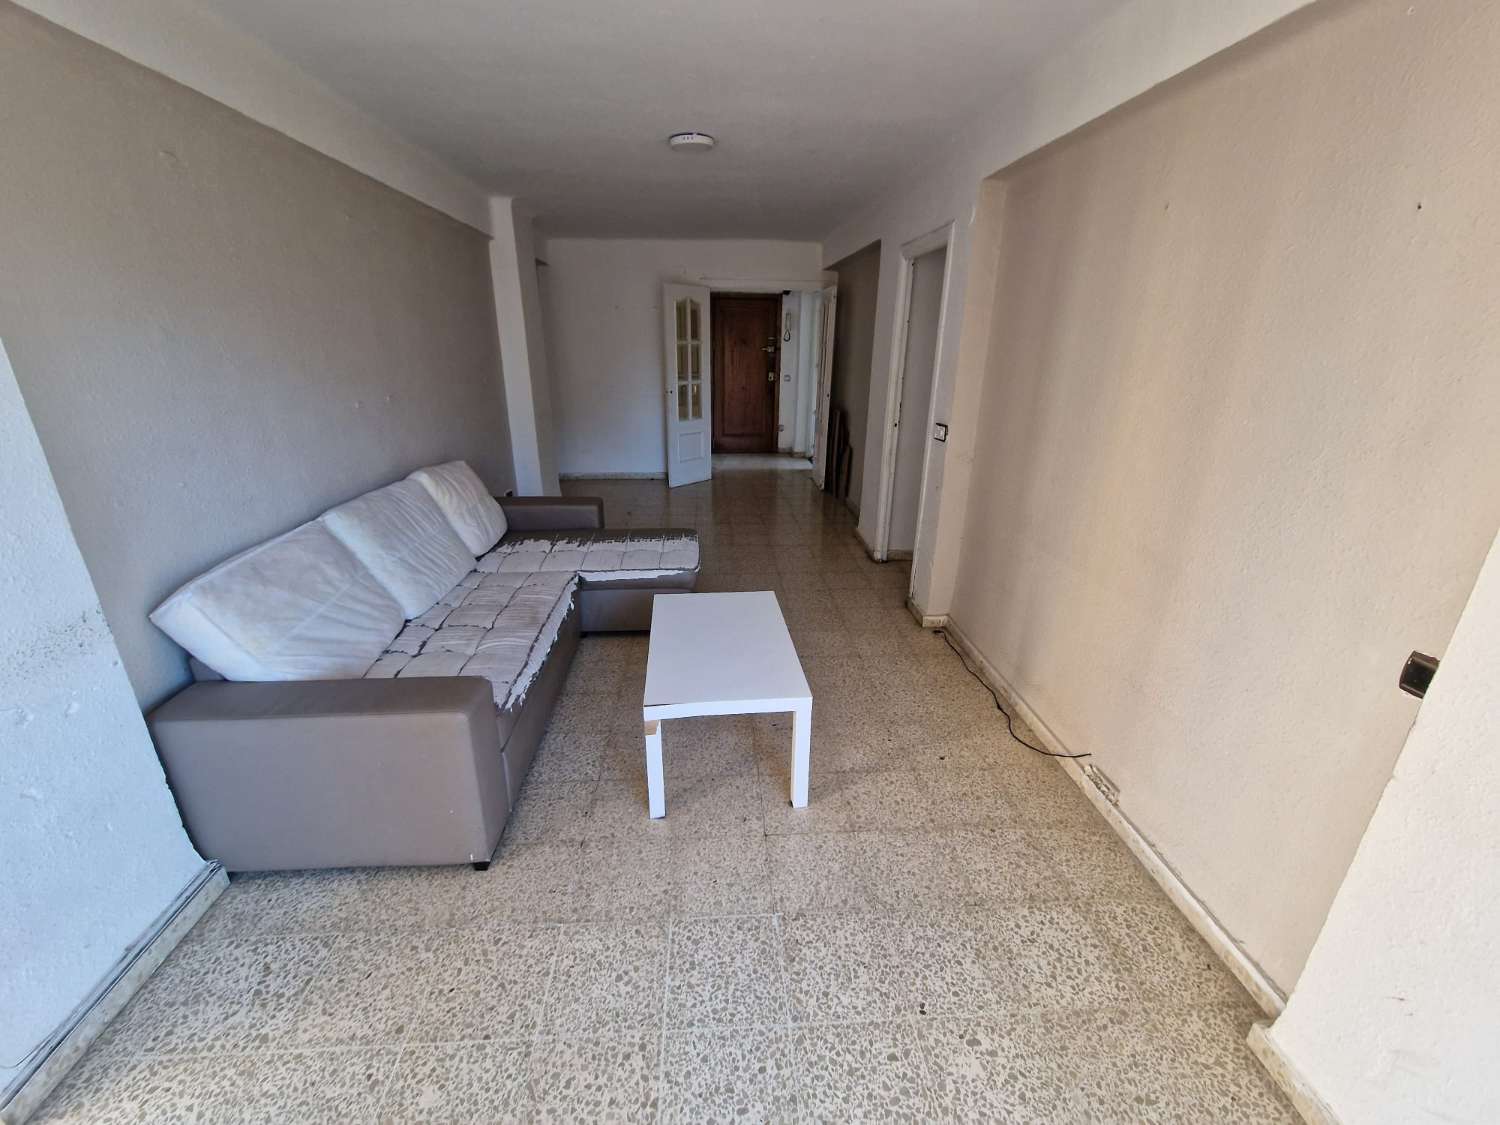 Flat for sale in El Bulto (Málaga)